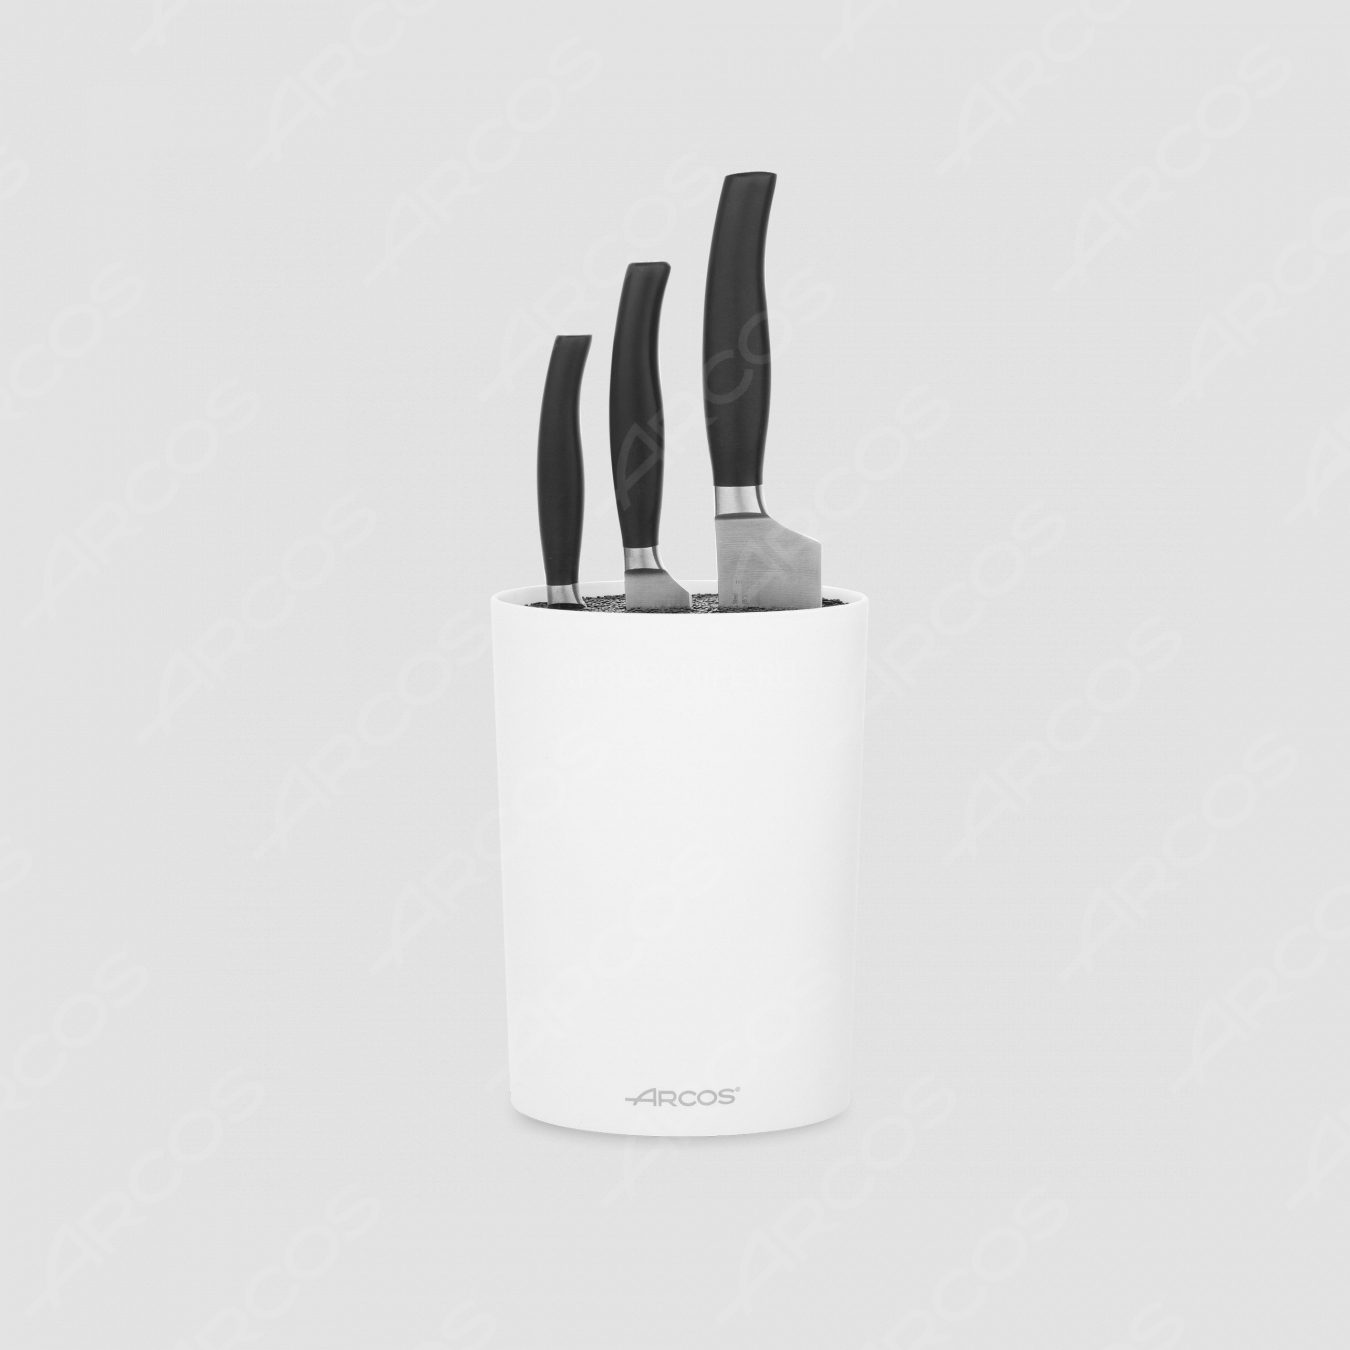 Набор из 3-х ножей с белой подставкой, серия Clara, ARCOS, Испания